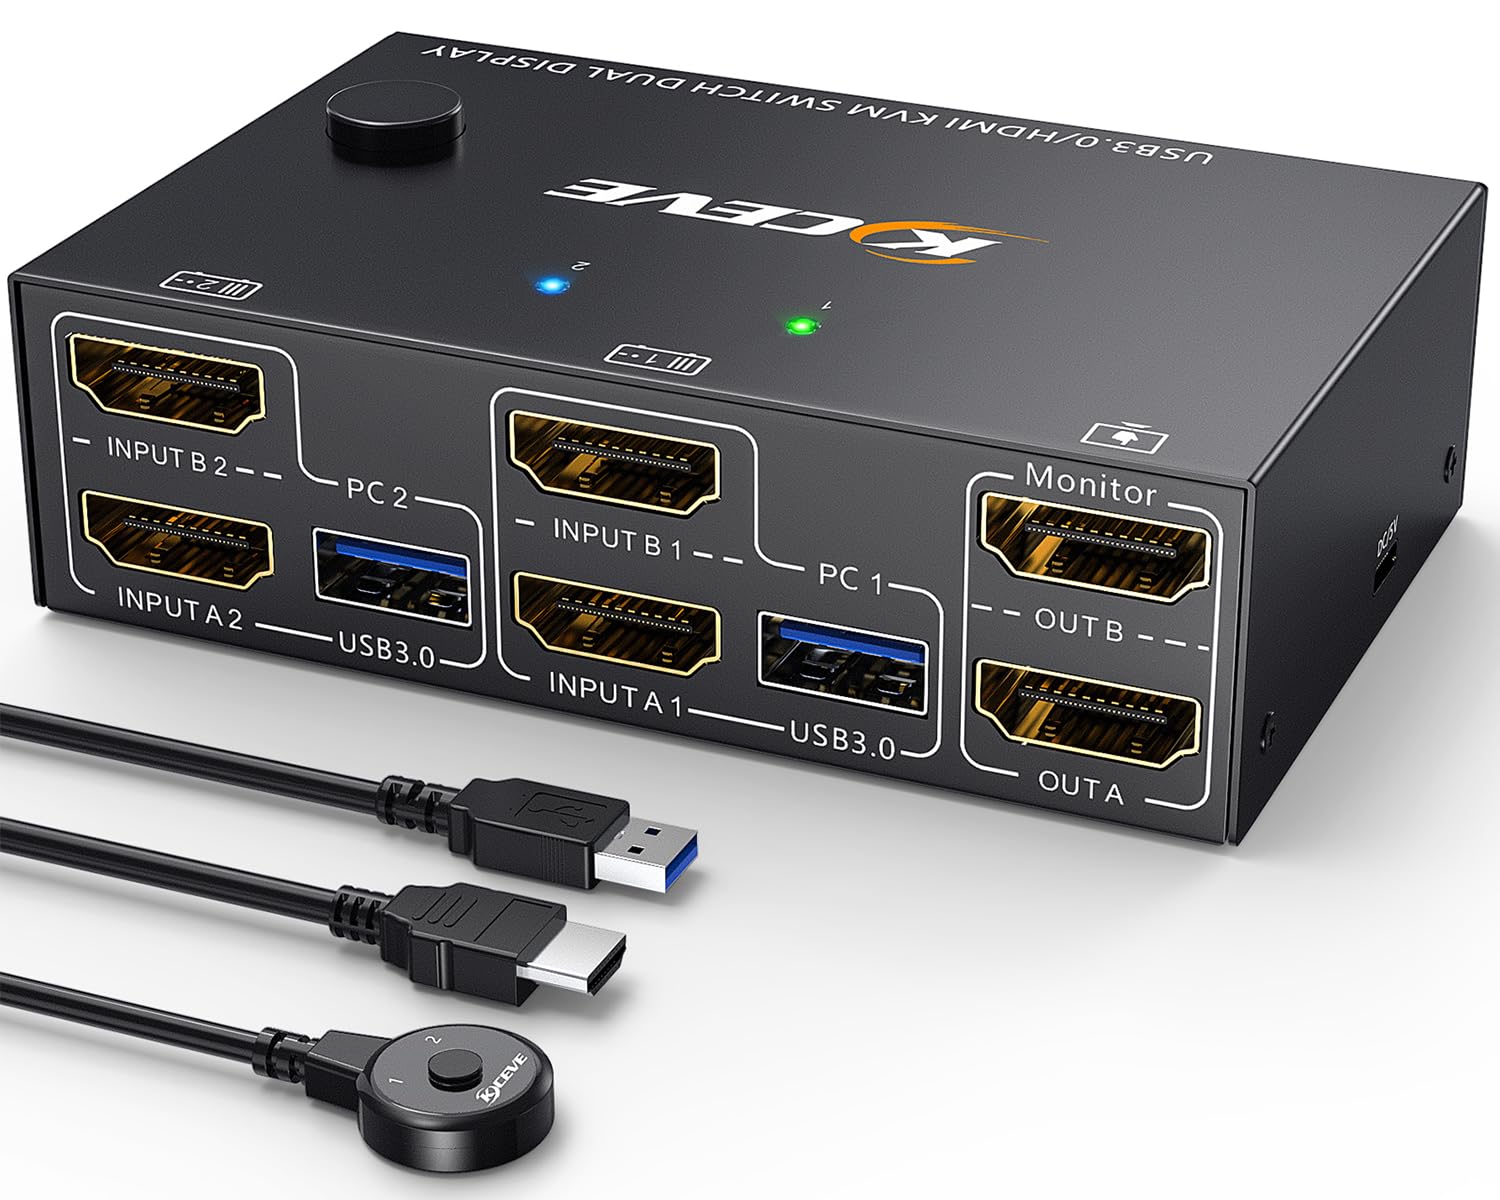 HDMI USB 3.0 KVM Switch 2 PC 2 Monitore 4K@60Hz 2K@144Hz,EDID Emulator,ESKEVE Dual Monitor KVM Switch mit 4 USB 3.0 Ports für 2 PC/Laptops teilen sich Maus, Tastatur, Kabelfernbedienung und Kabel